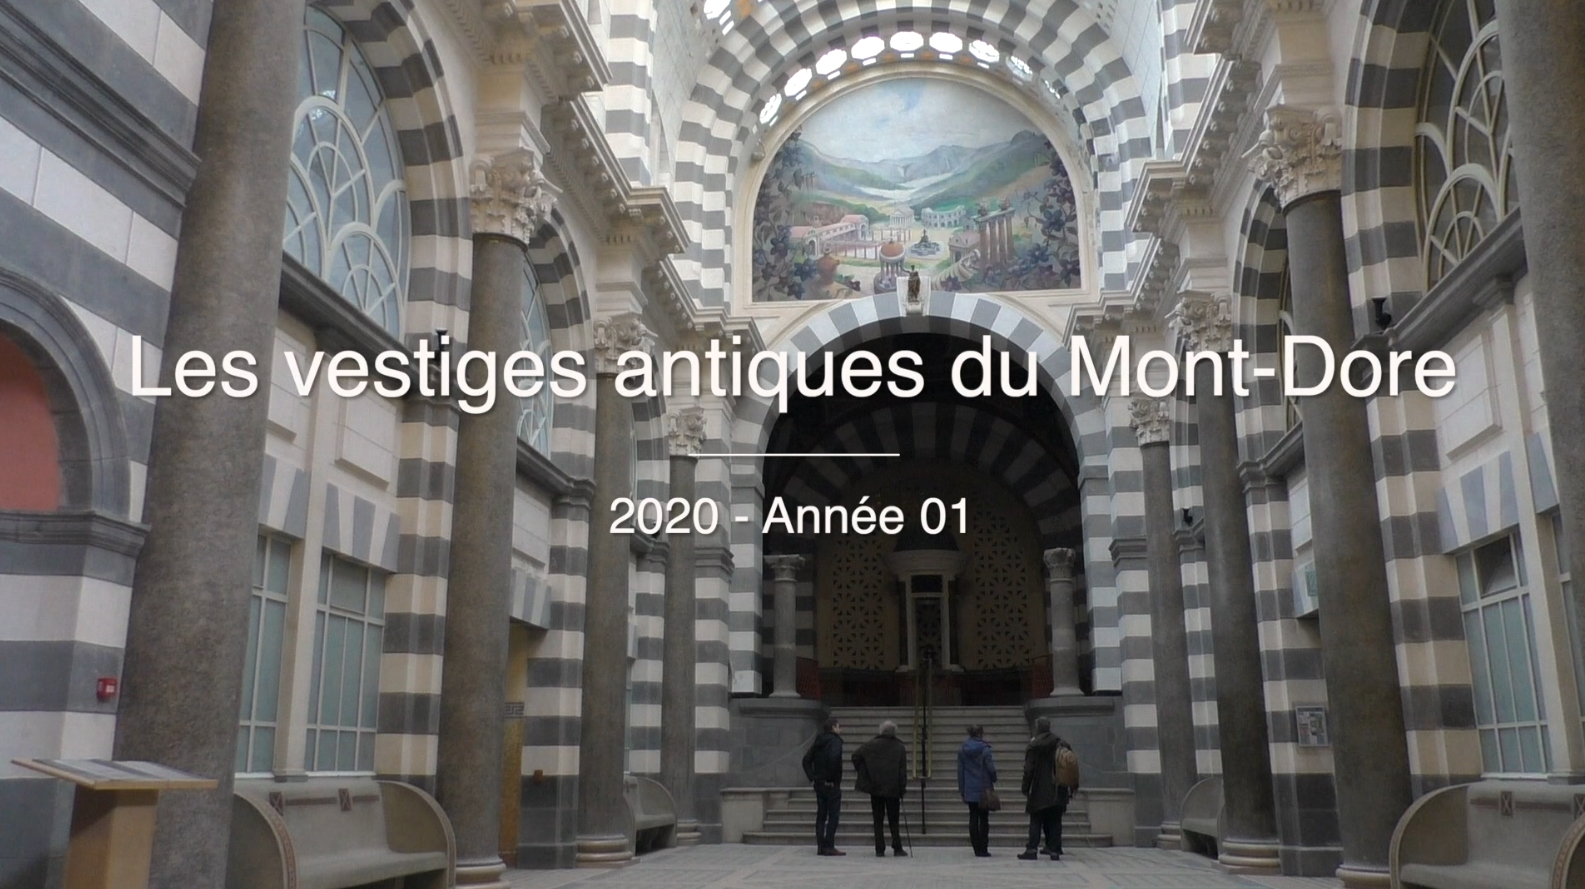 Les vestiges antiques du Mont-Dore. 2020 - Année 01